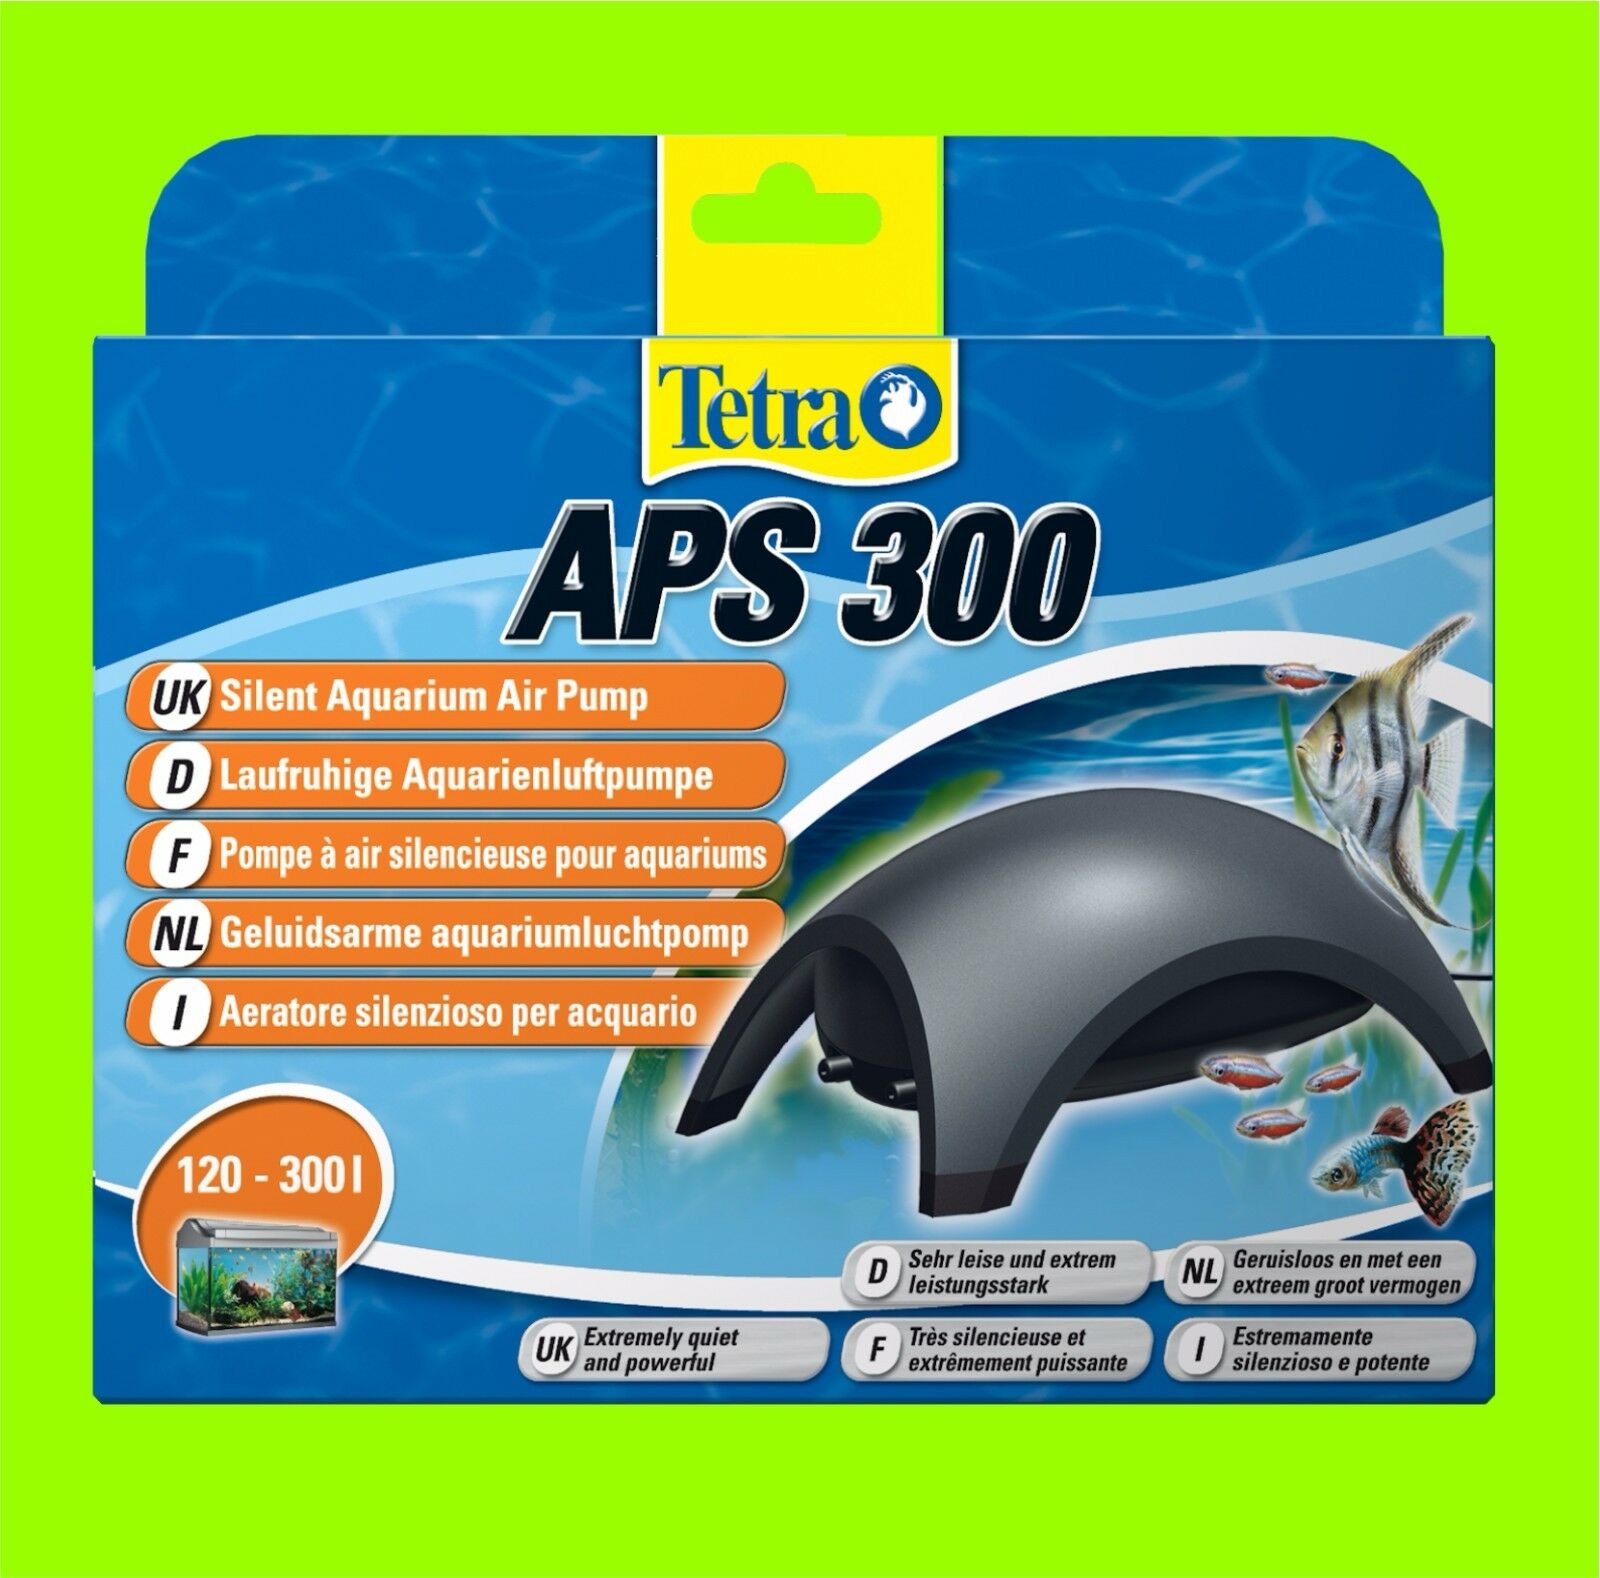 Tetra APS 300 Aquarienluftpumpe sehr leise Luftpumpe für 120-300l Aquarium, Luftpumpen, Aquaristik